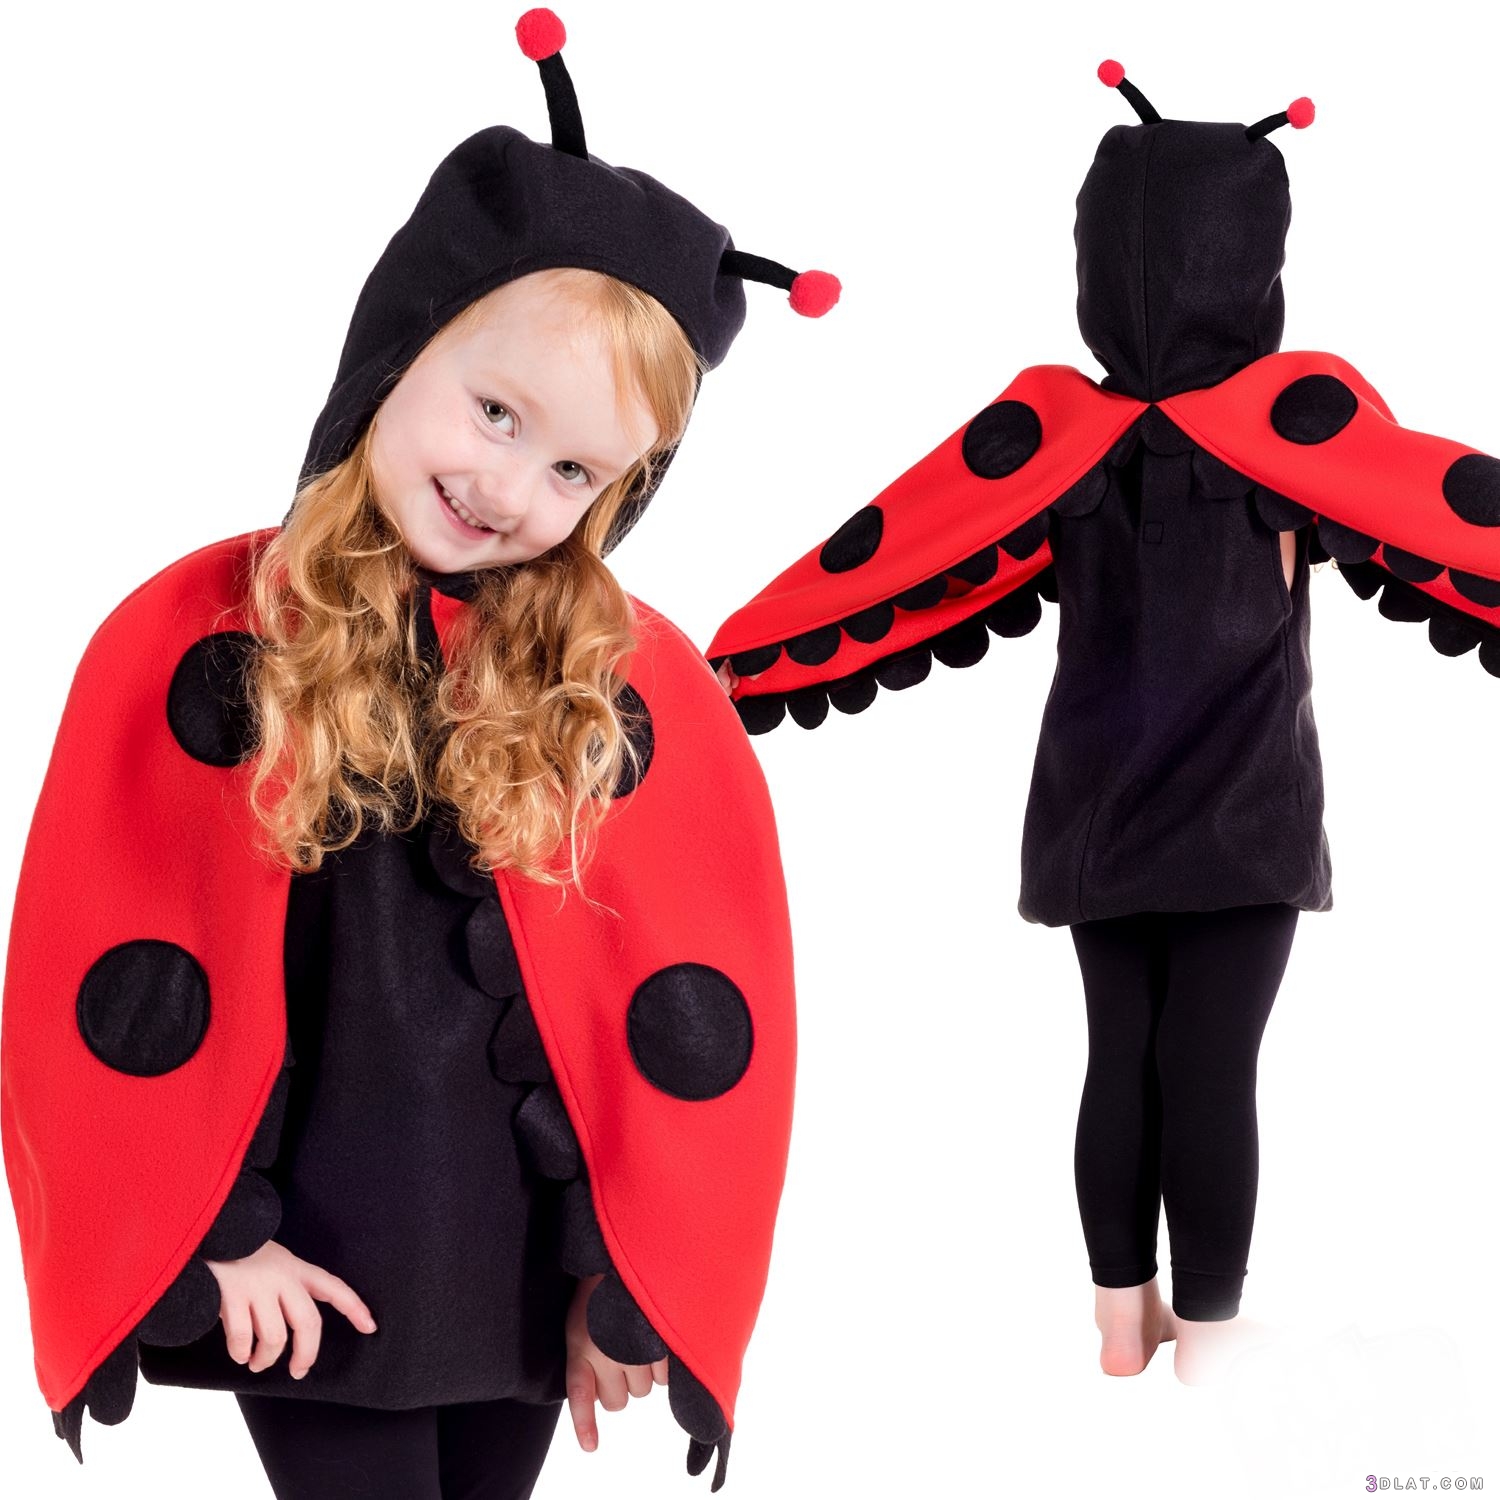 مجموعة من الازياء التنكرية لاطفالك للمناسبات والحفلات ٢٠١٩، kids costumes 2